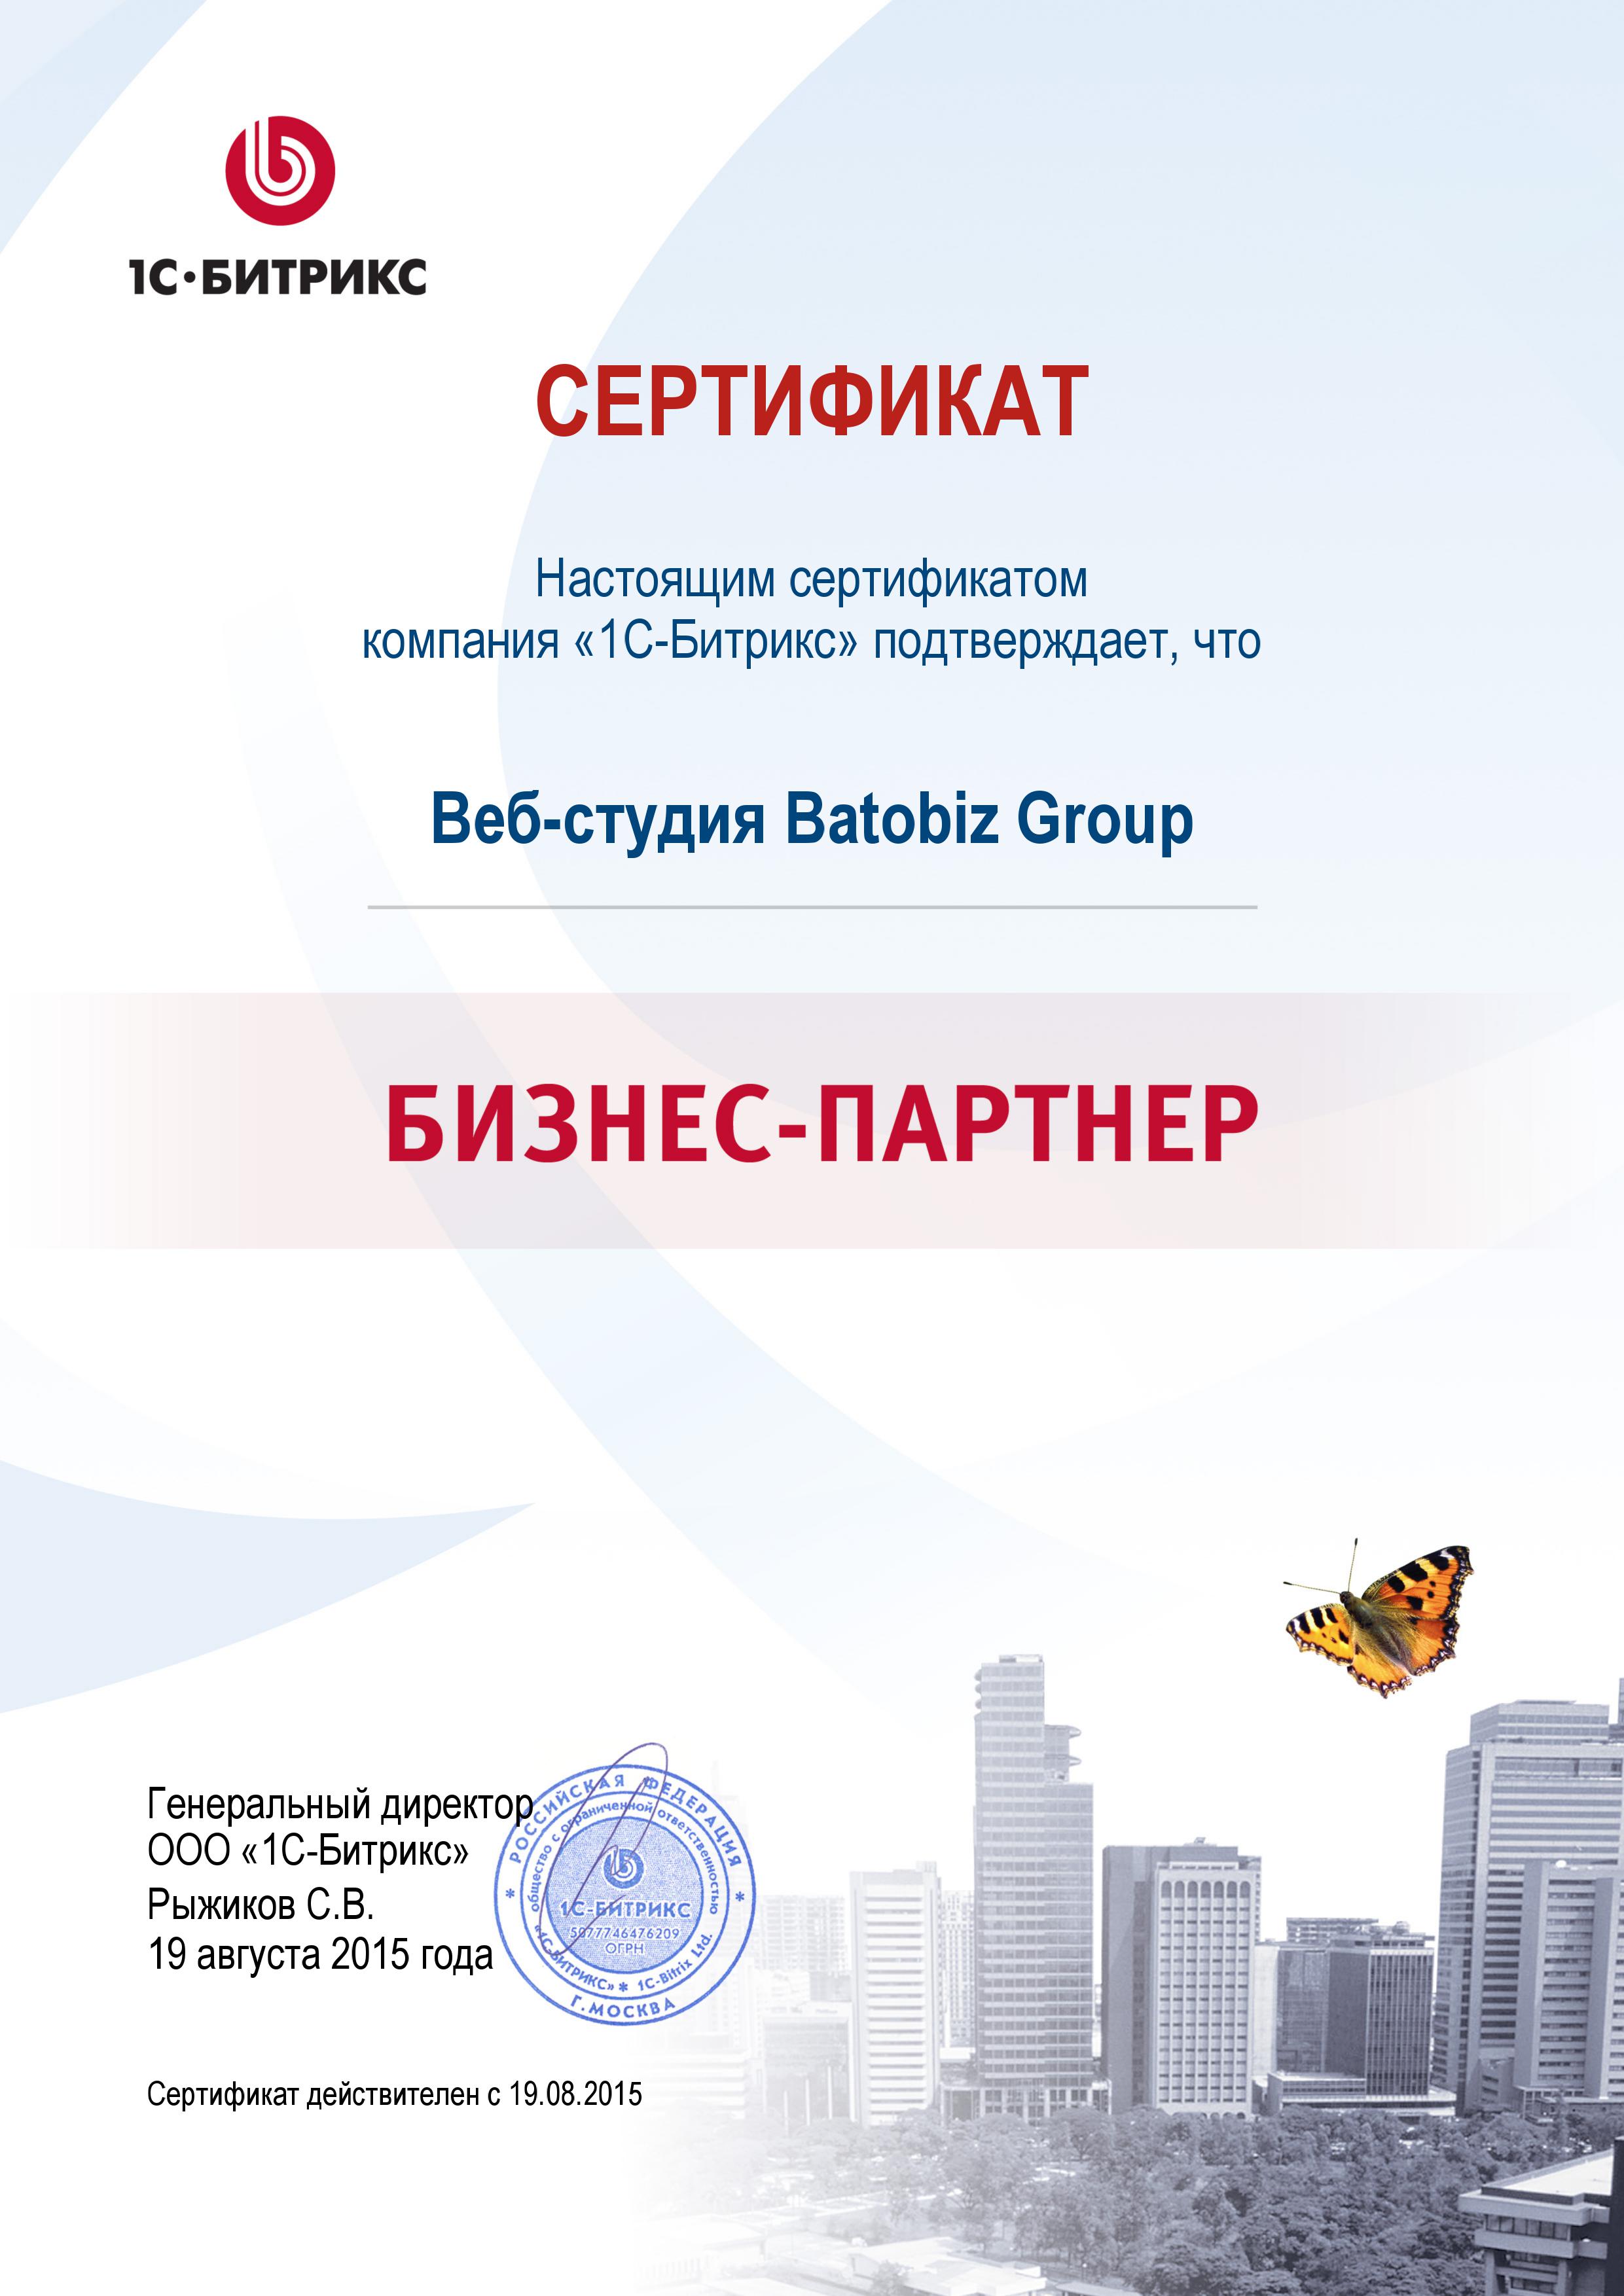 сертификат Batobiz Group официальный бизнес партнер 1С Битрикс